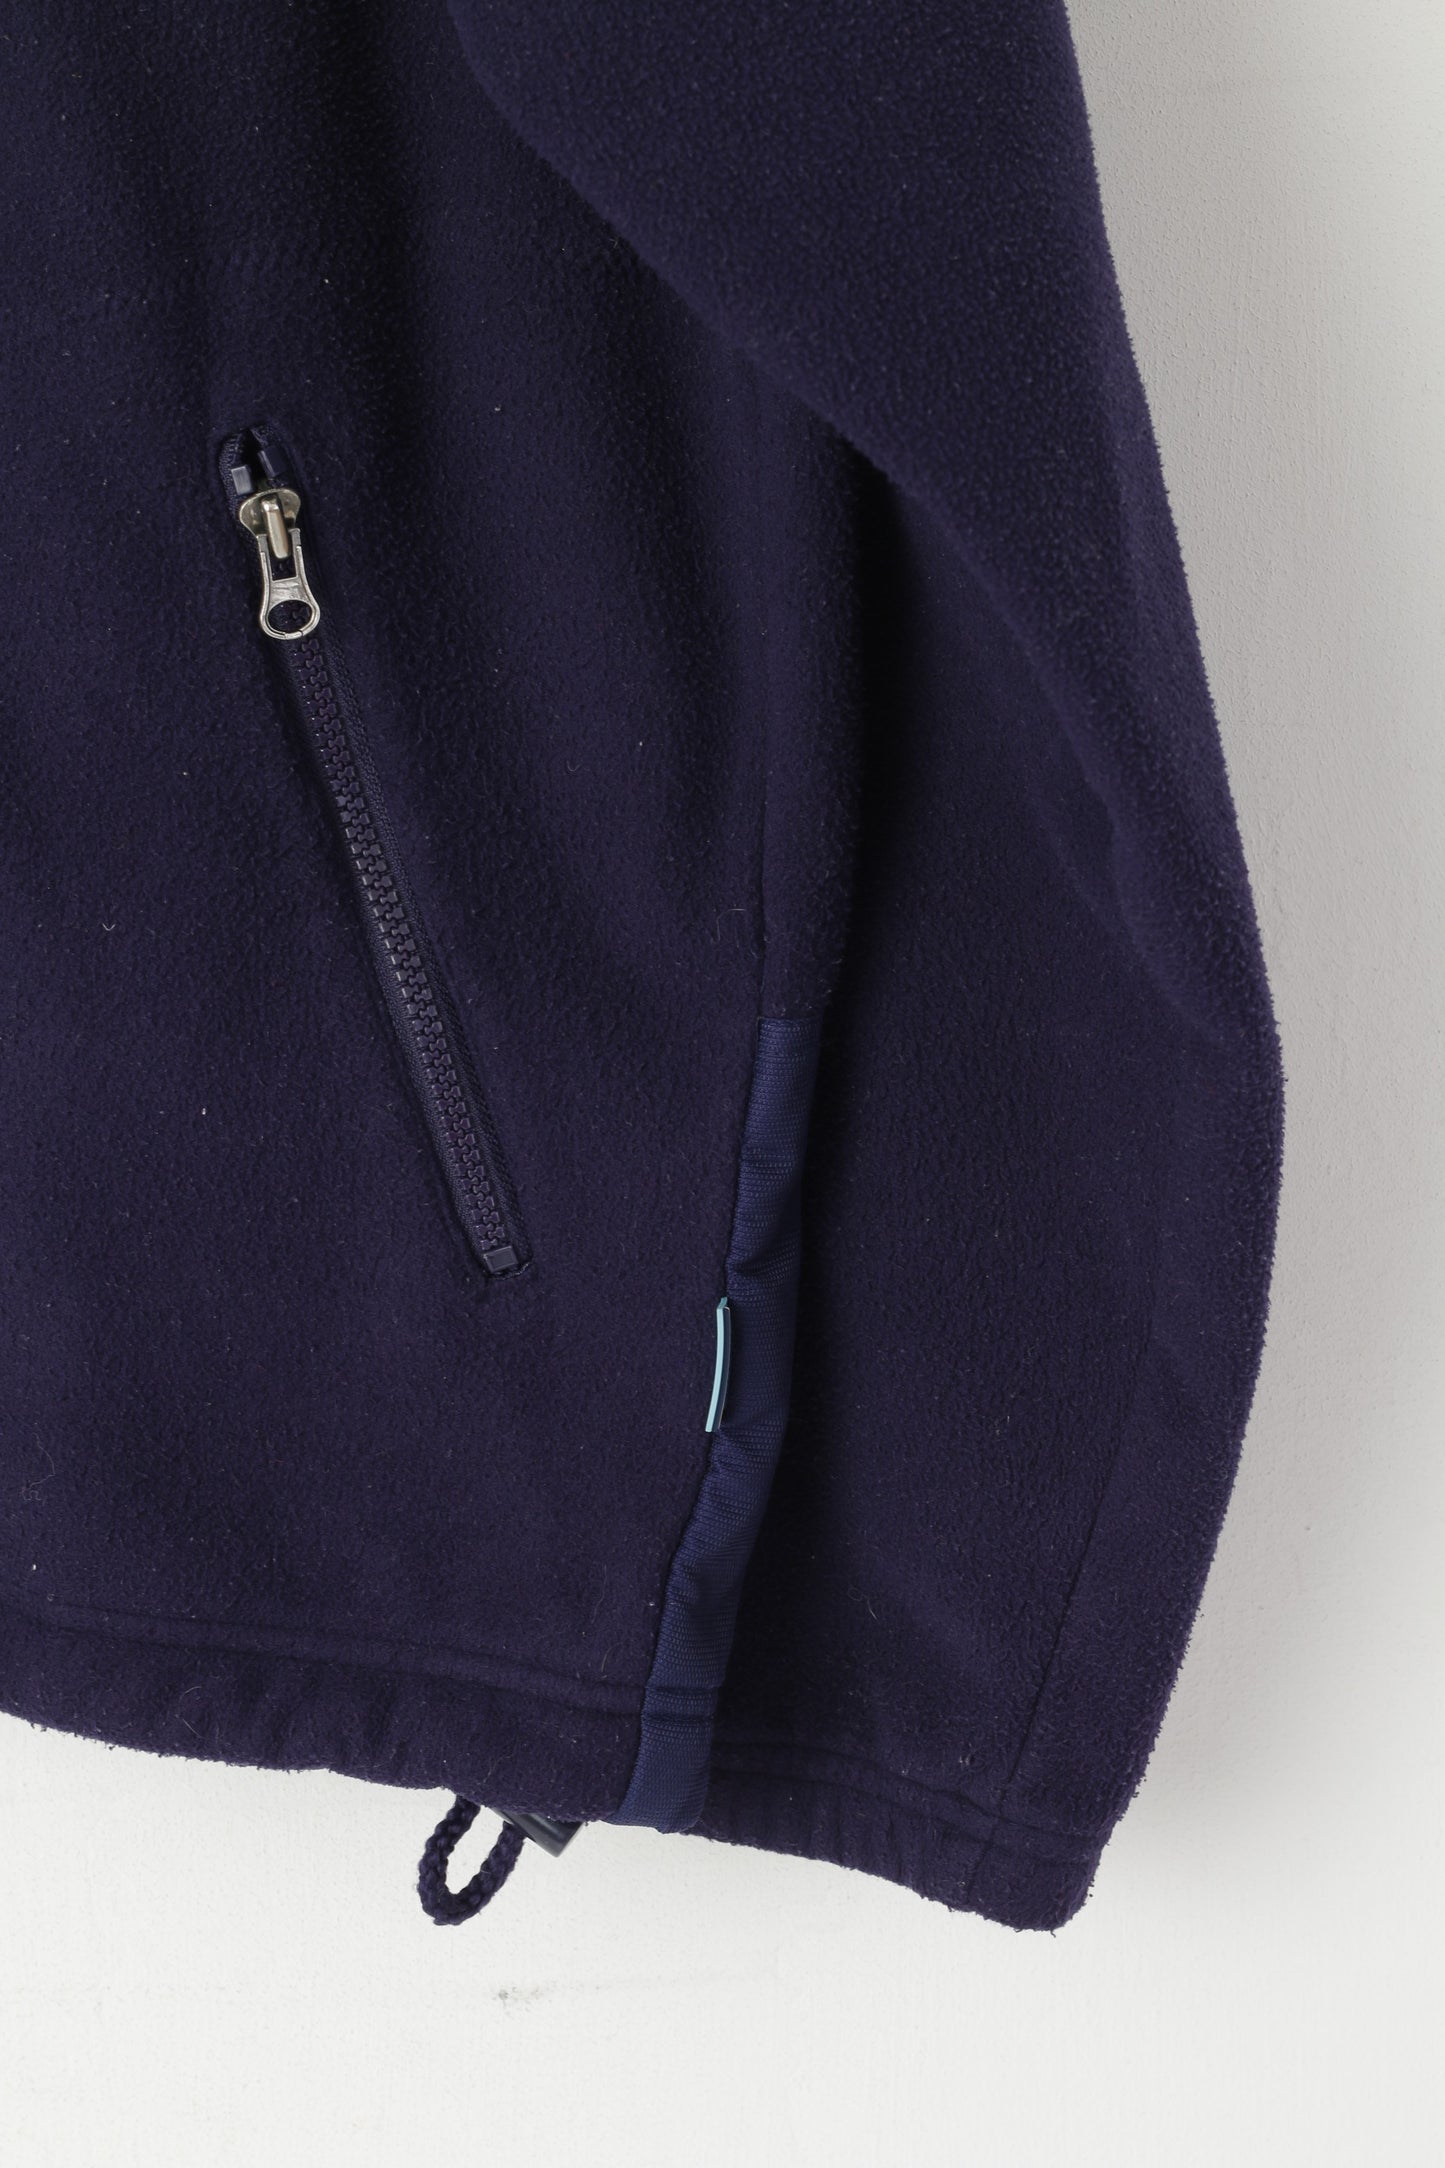 Ellesse Men M Fleece Jacket Purple Full Zipper Sportswear Vintage Sweatshirt Top